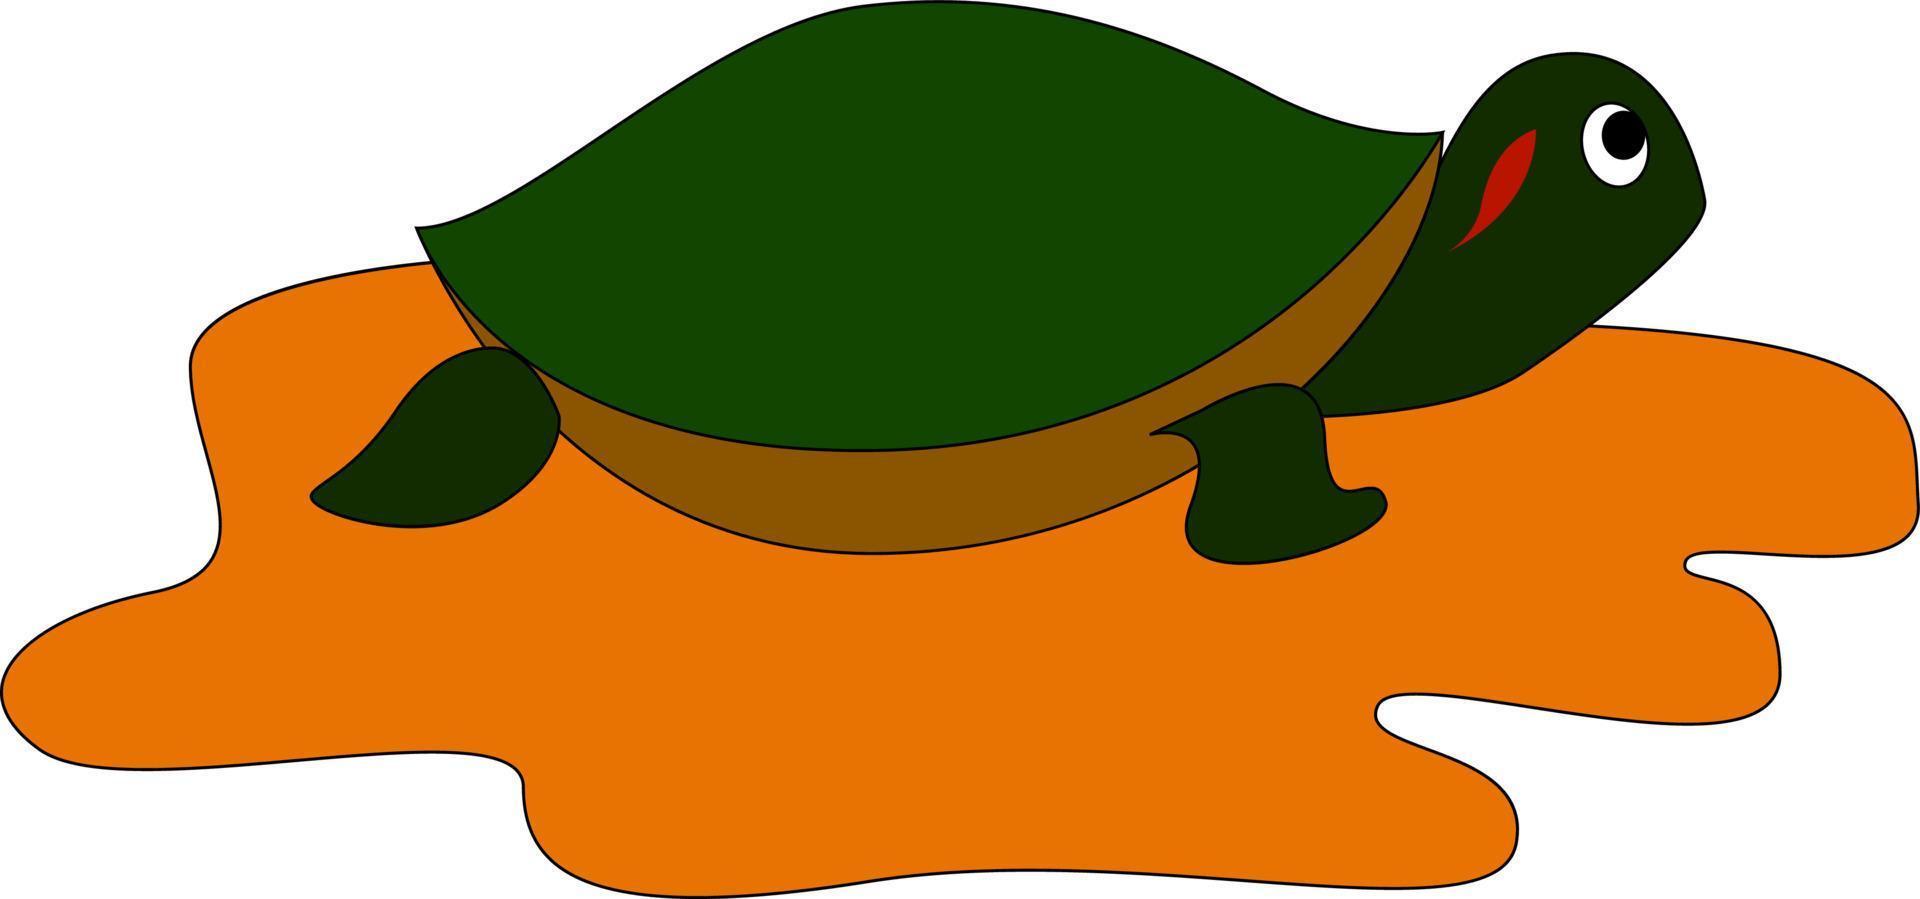 långsam röd örat sköldpadda, illustration, vektor på vit bakgrund.